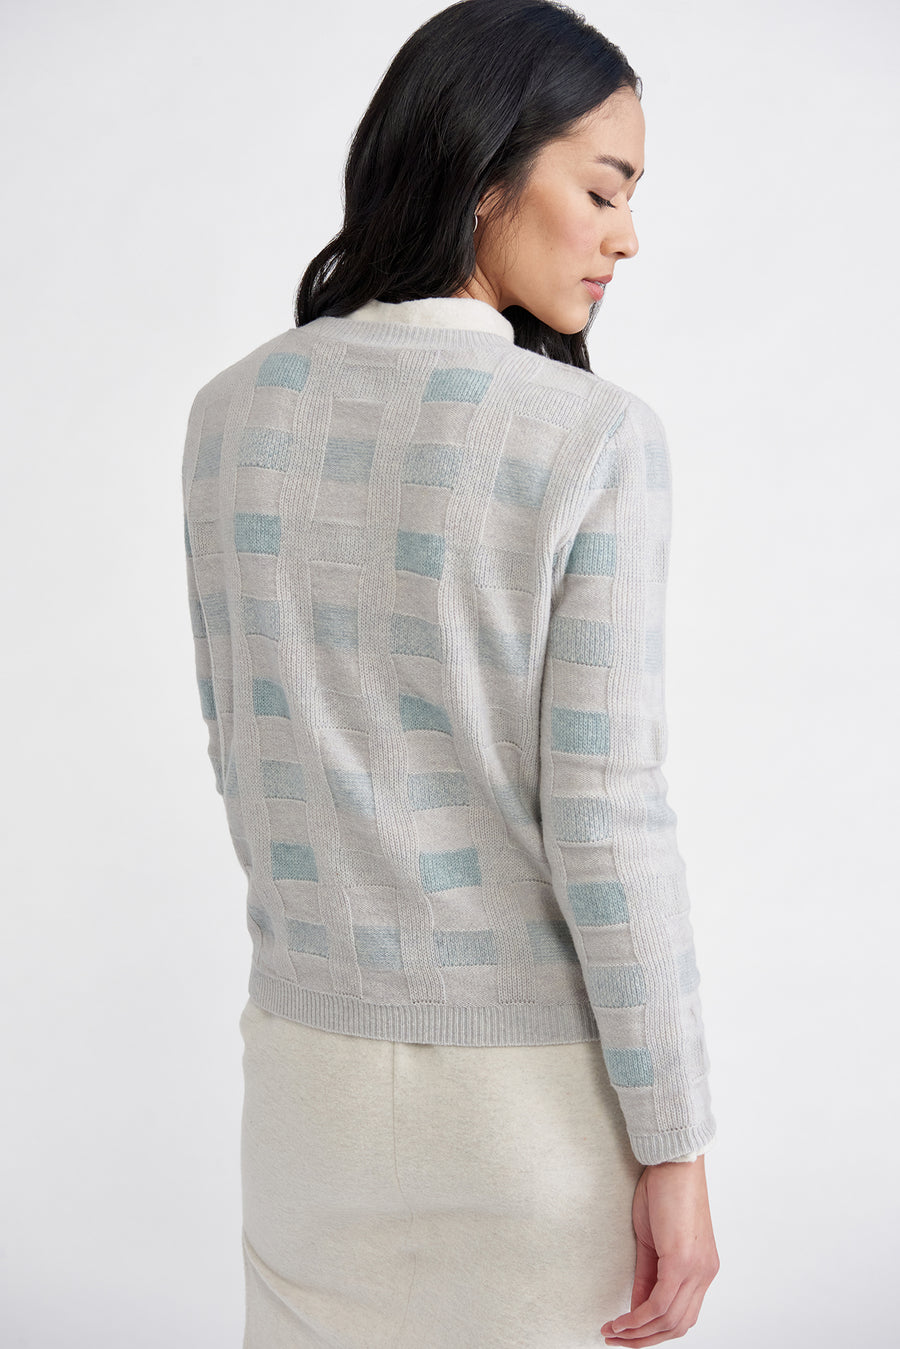 Pierre Wool Sweater